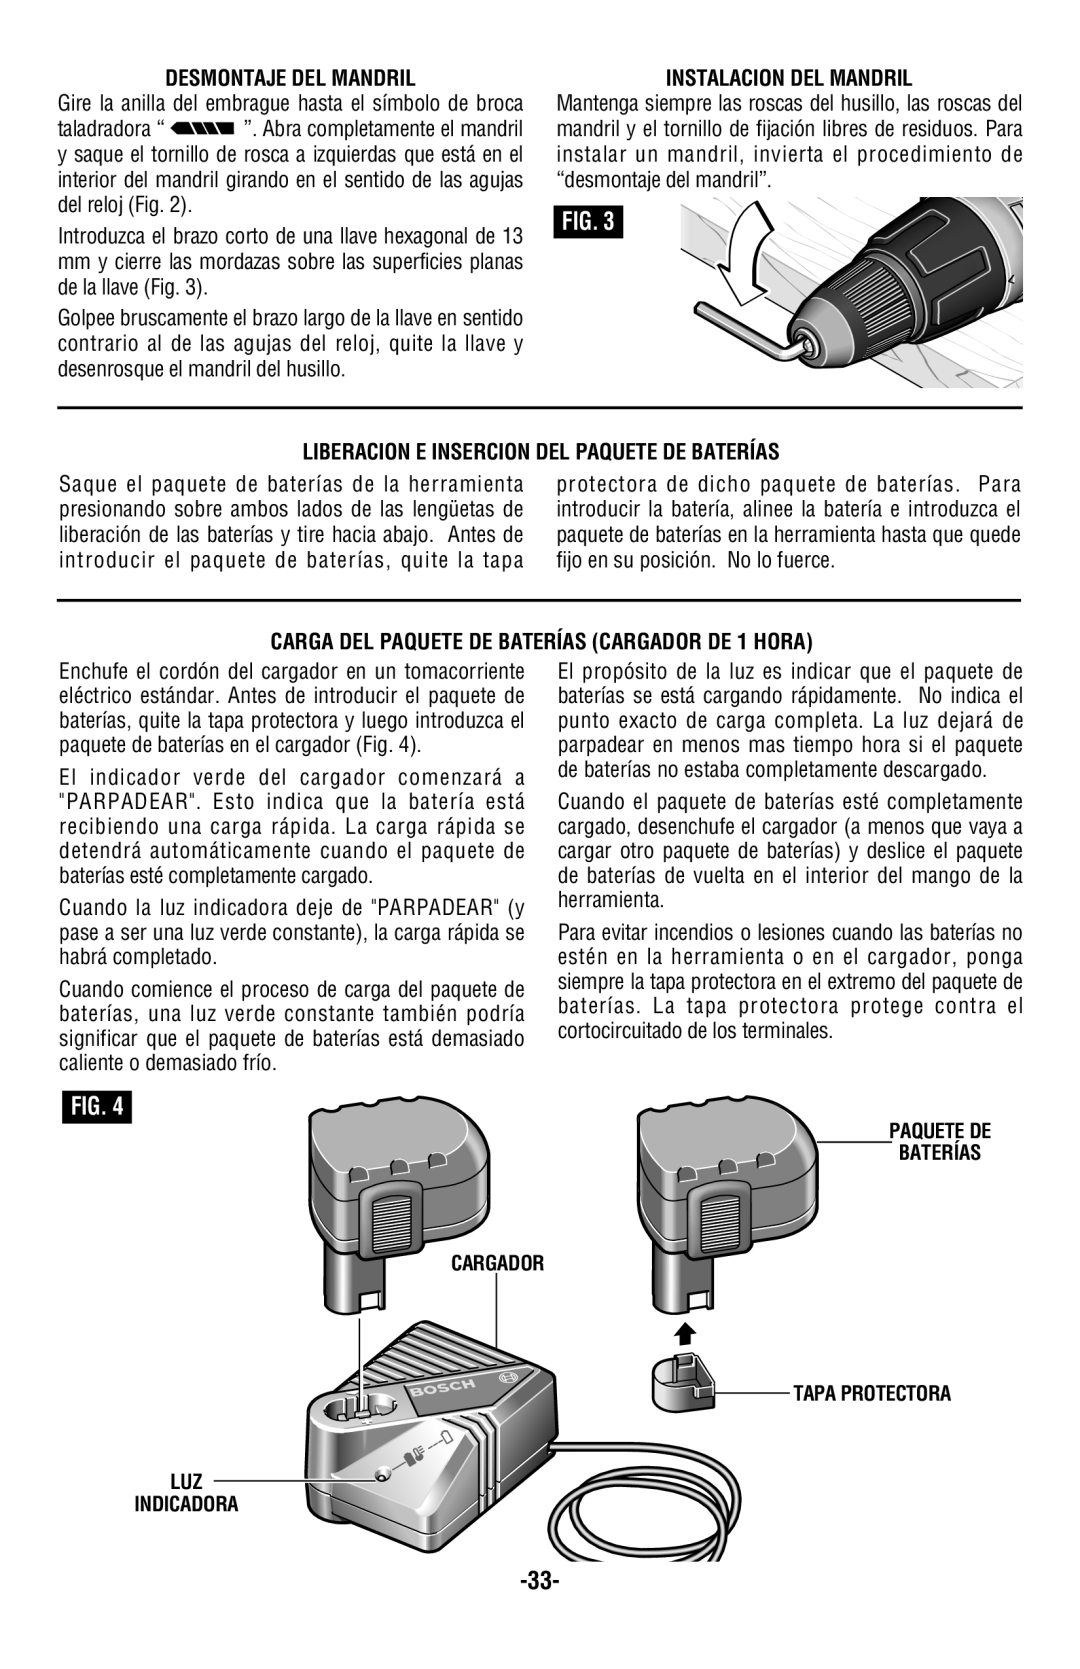 Bosch Power Tools 13614 Desmontaje Del Mandril, Instalacion Del Mandril, Liberacion E Insercion Del Paquete De Baterías 